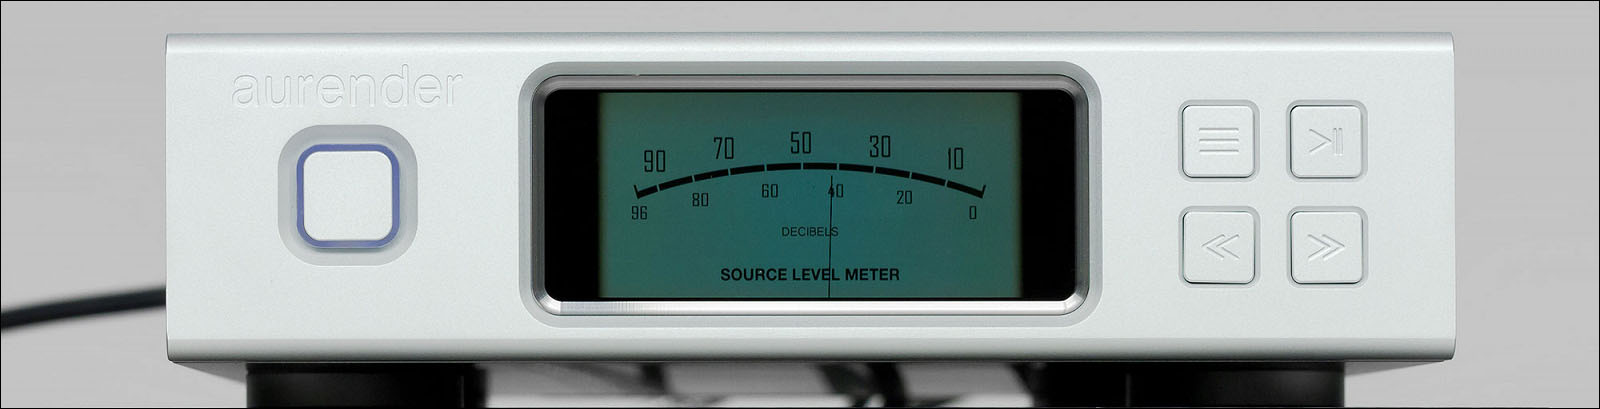 Обзор сетевого аудиоплеера Aurender N100C для воспроизведения Hi-Res-музыки